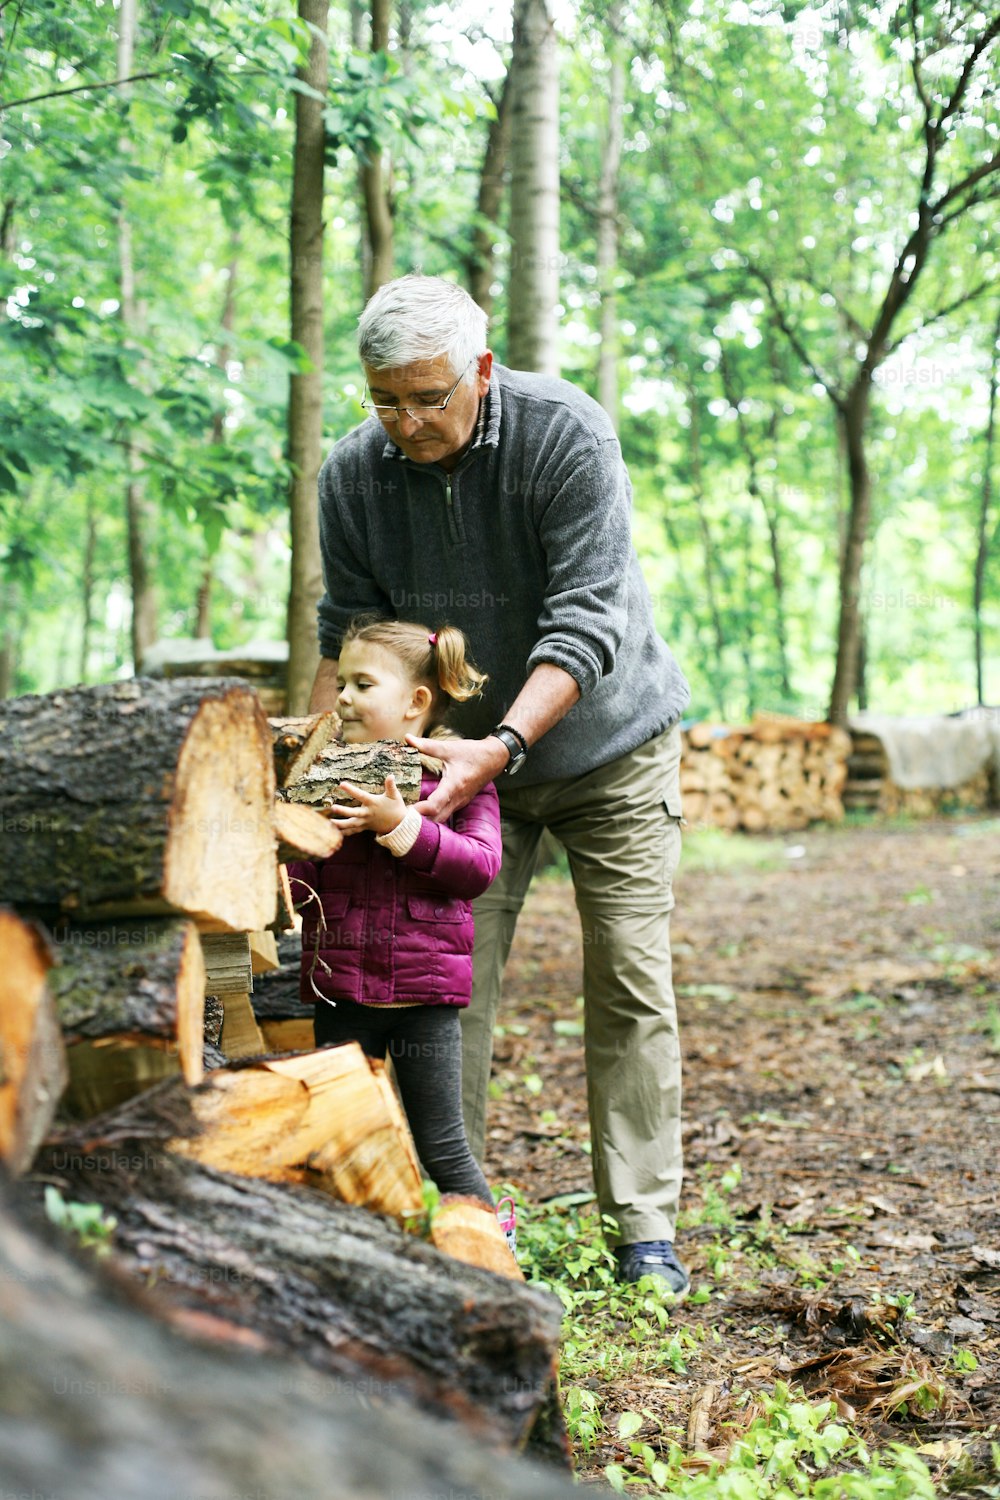 Bambina che aiuta il nonno a preparare i tronchi d'albero per la stagione invernale nel villaggio.